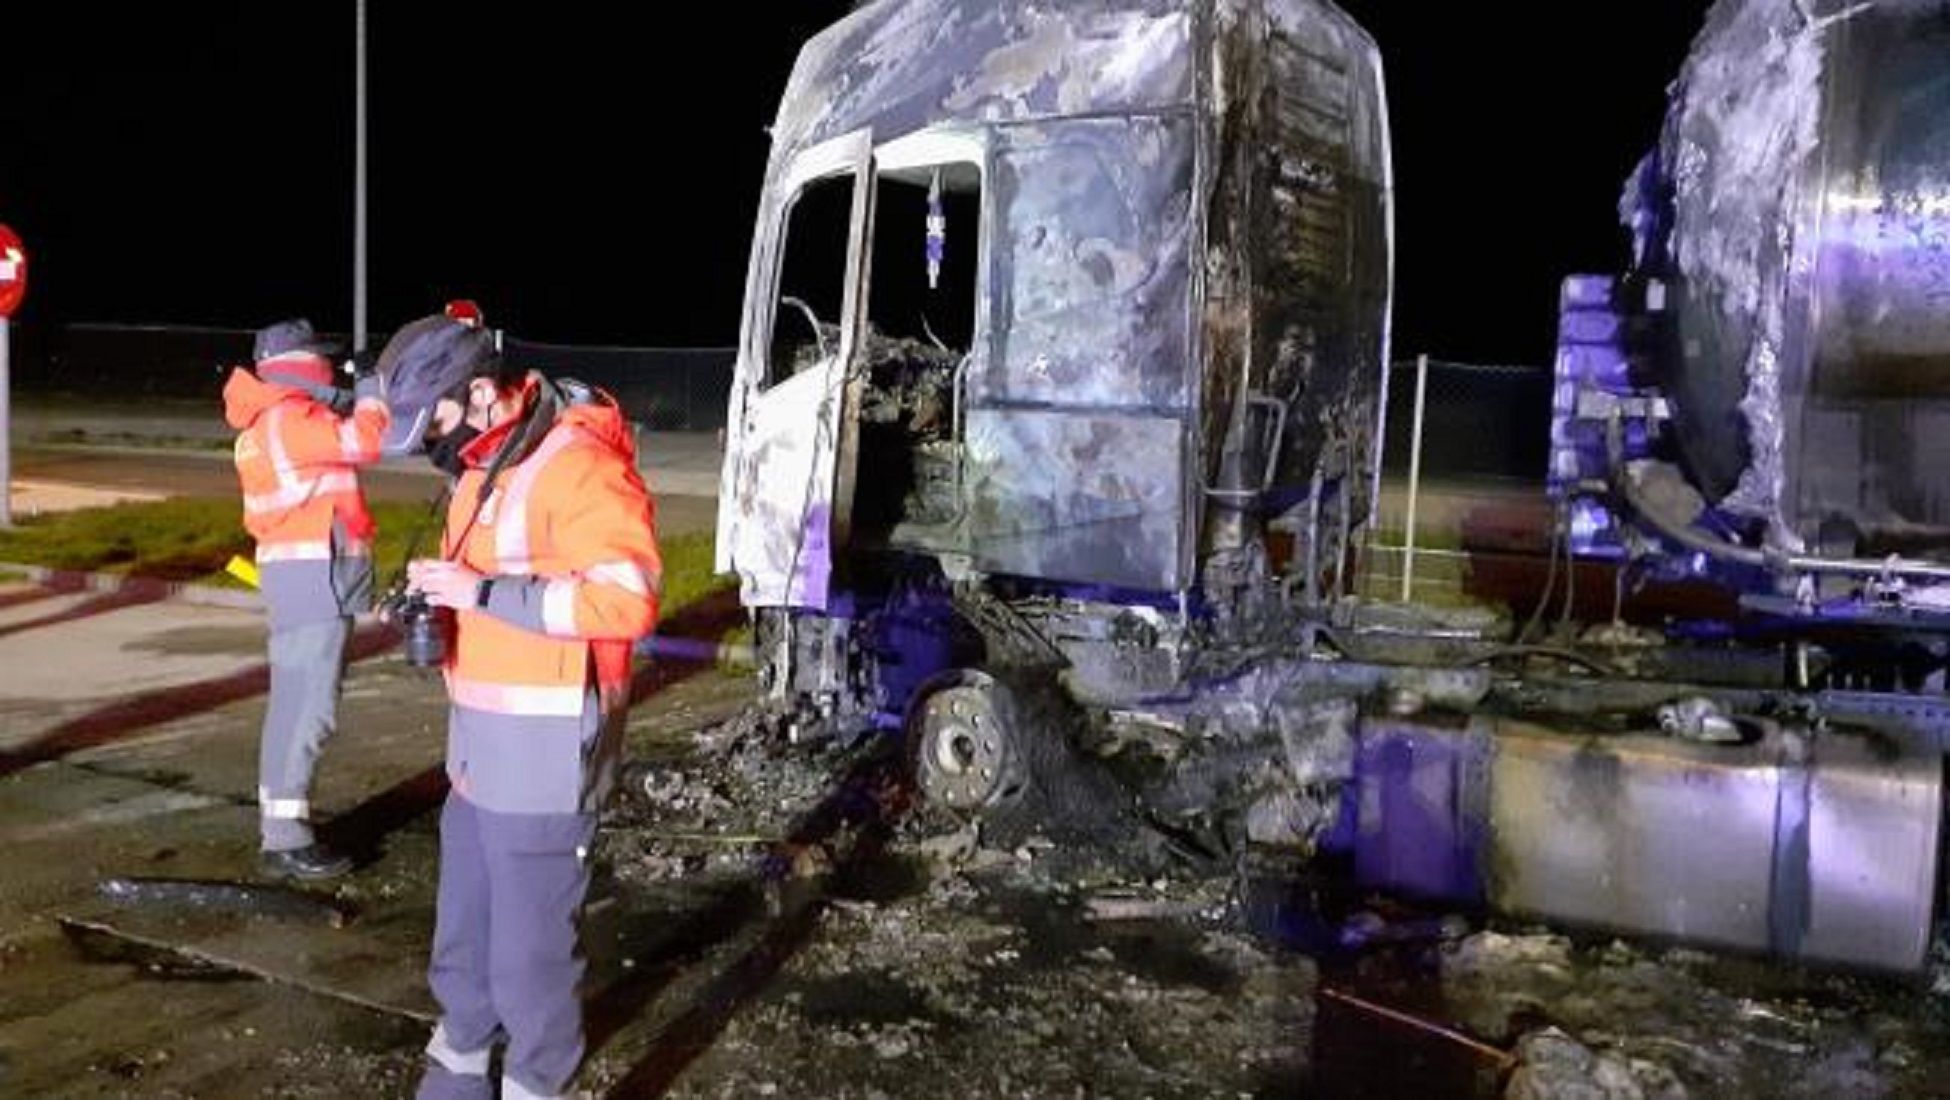 Cabina del camion incendiado / Gobierno de Navarra